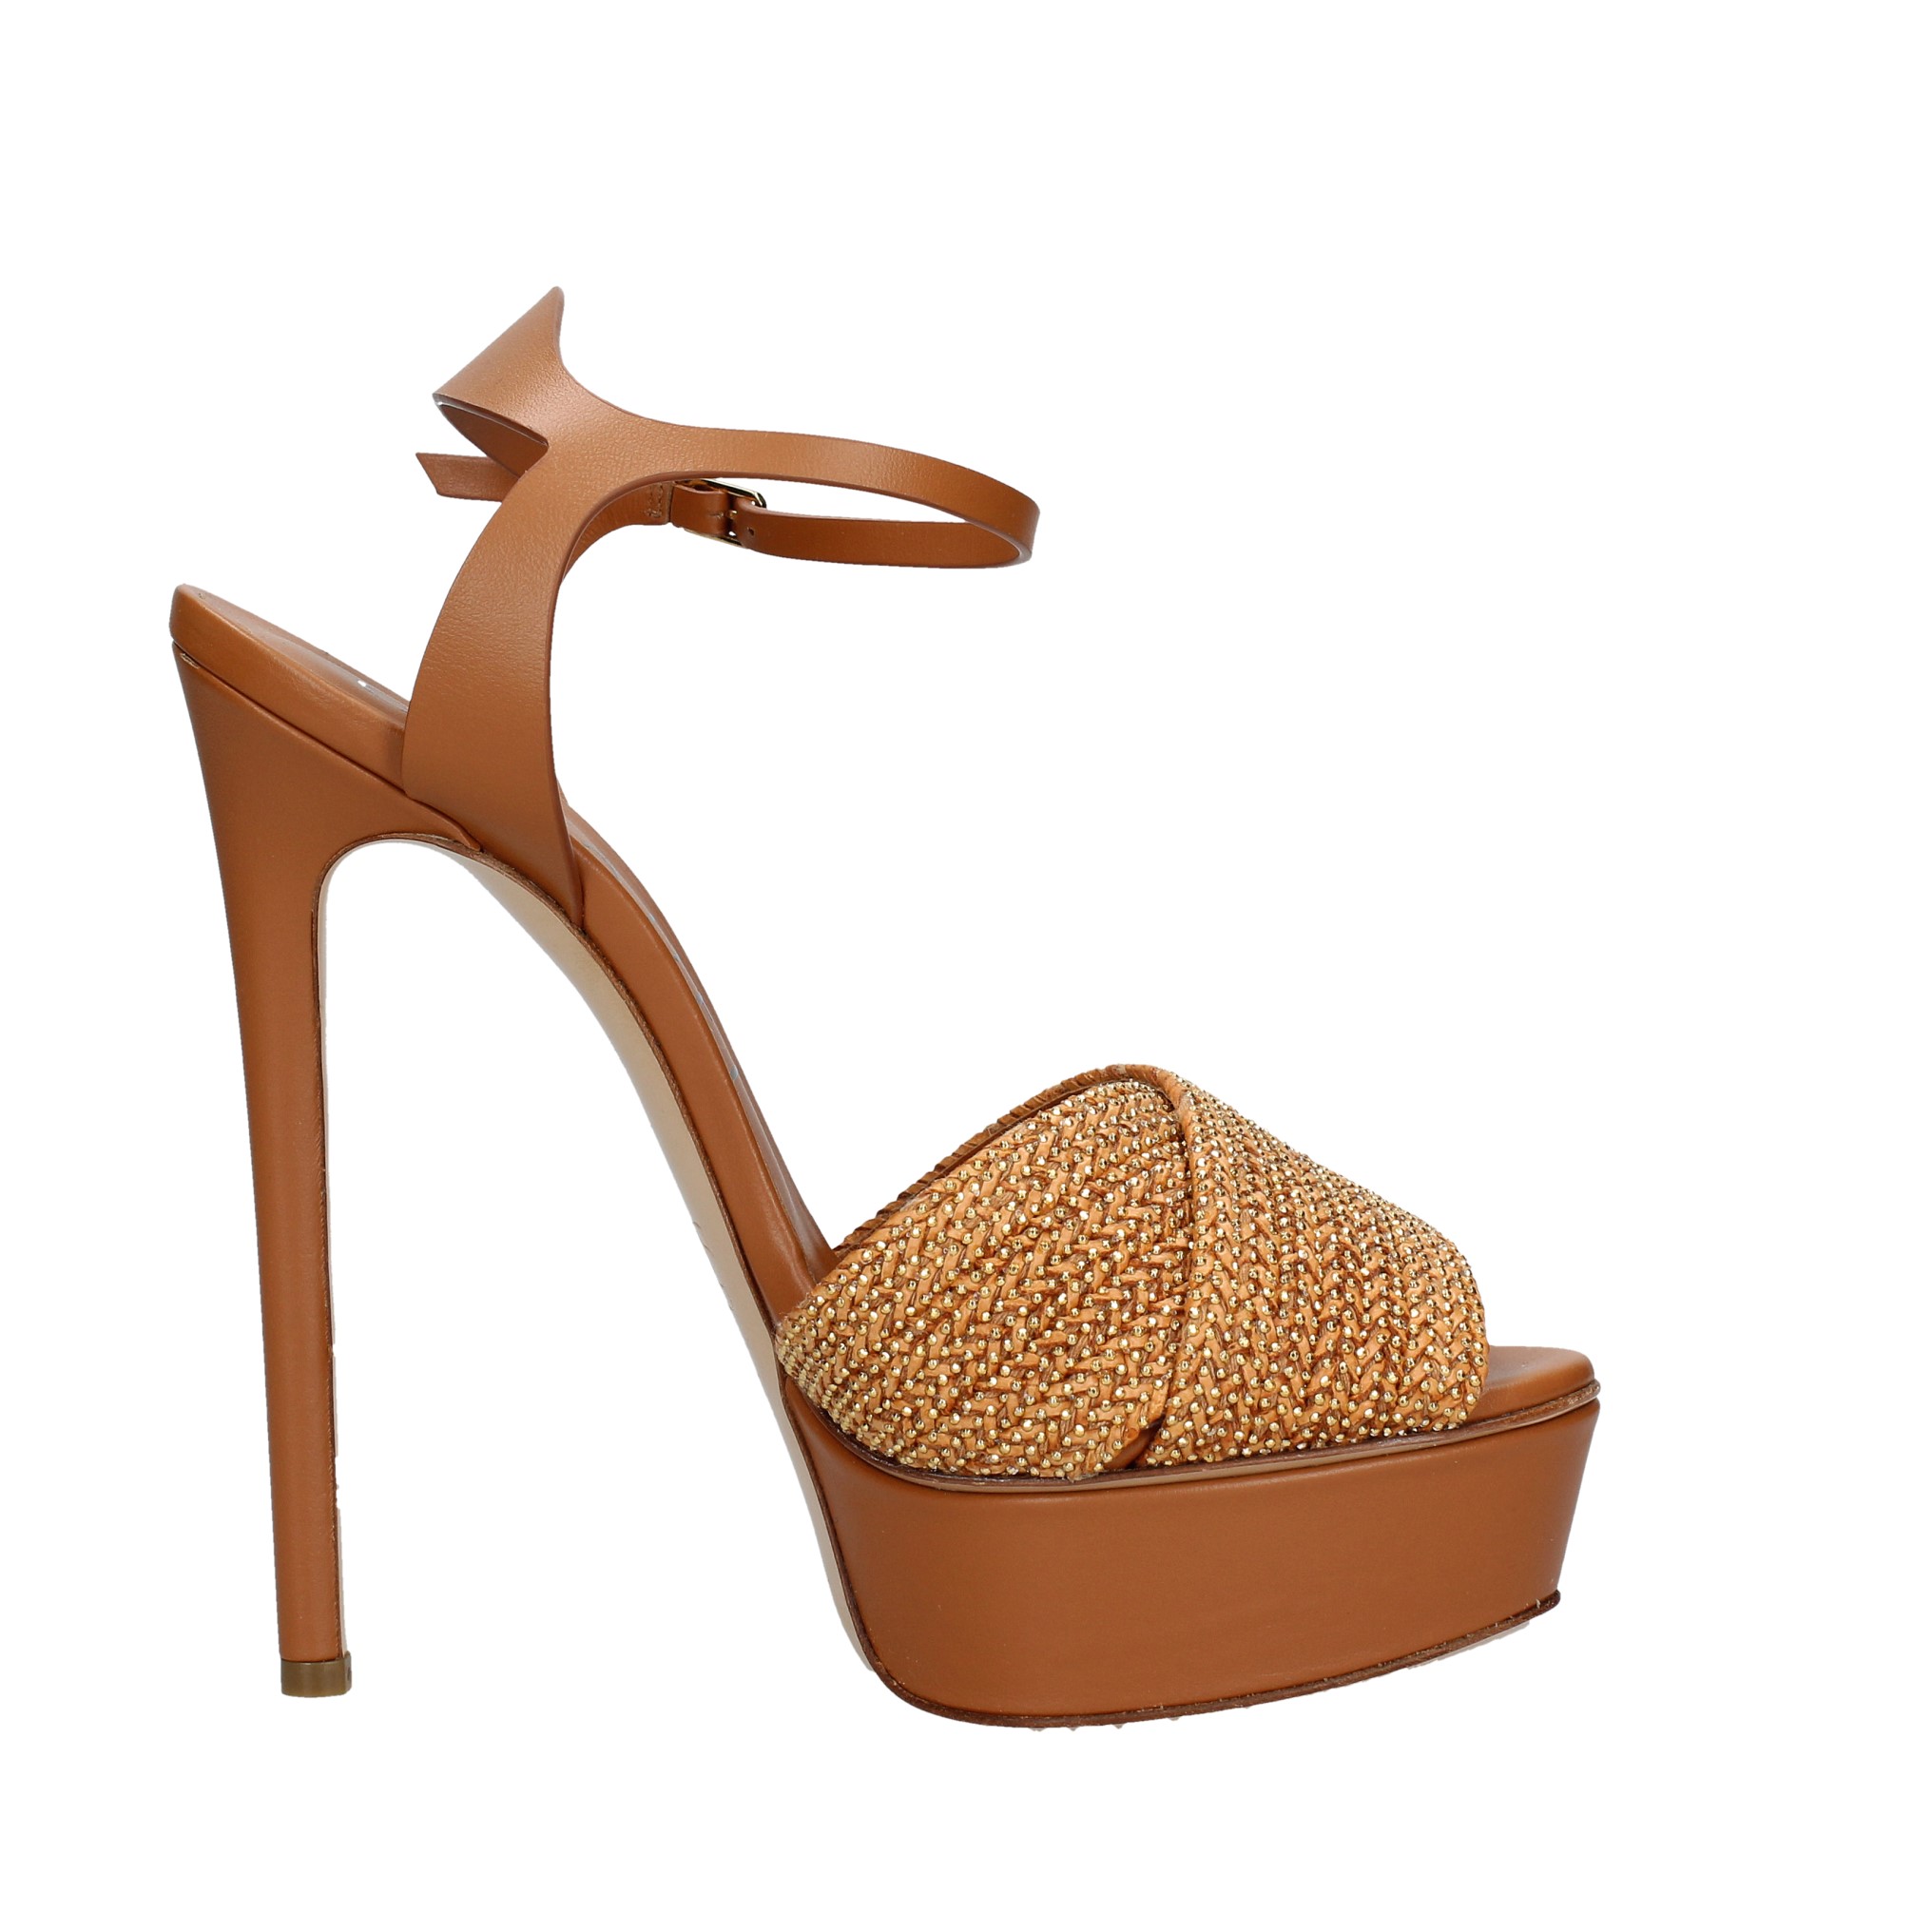 Sandali in pelle e piccole borchie oro - CASADEI - Ginevra calzature